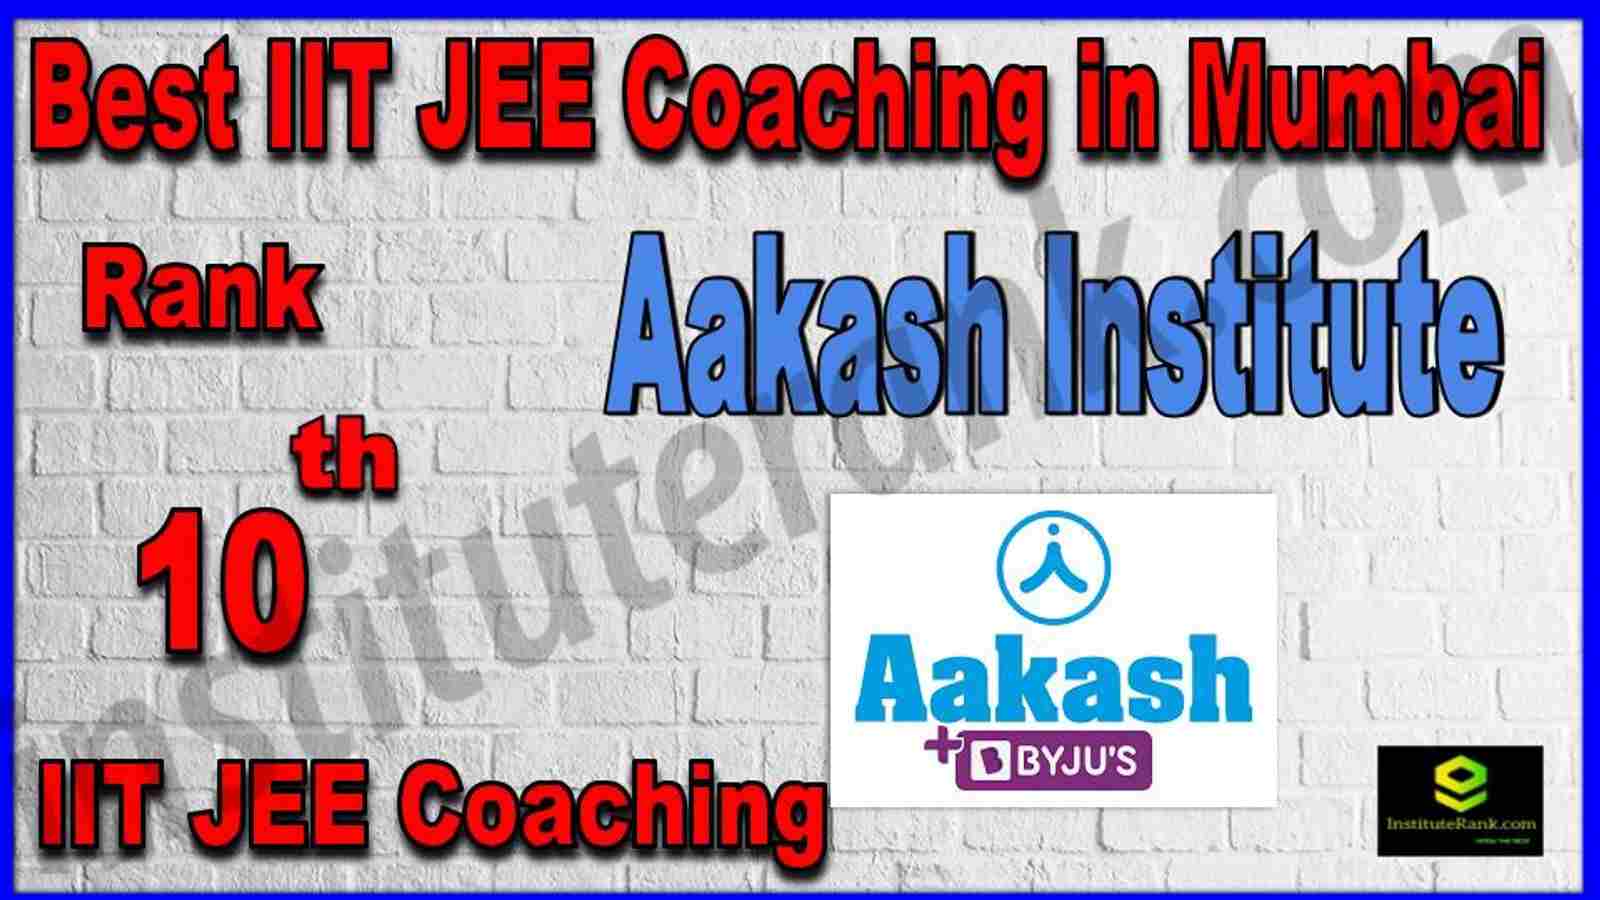 Rank 10th Best IIT JEE Coaching in Mumbai